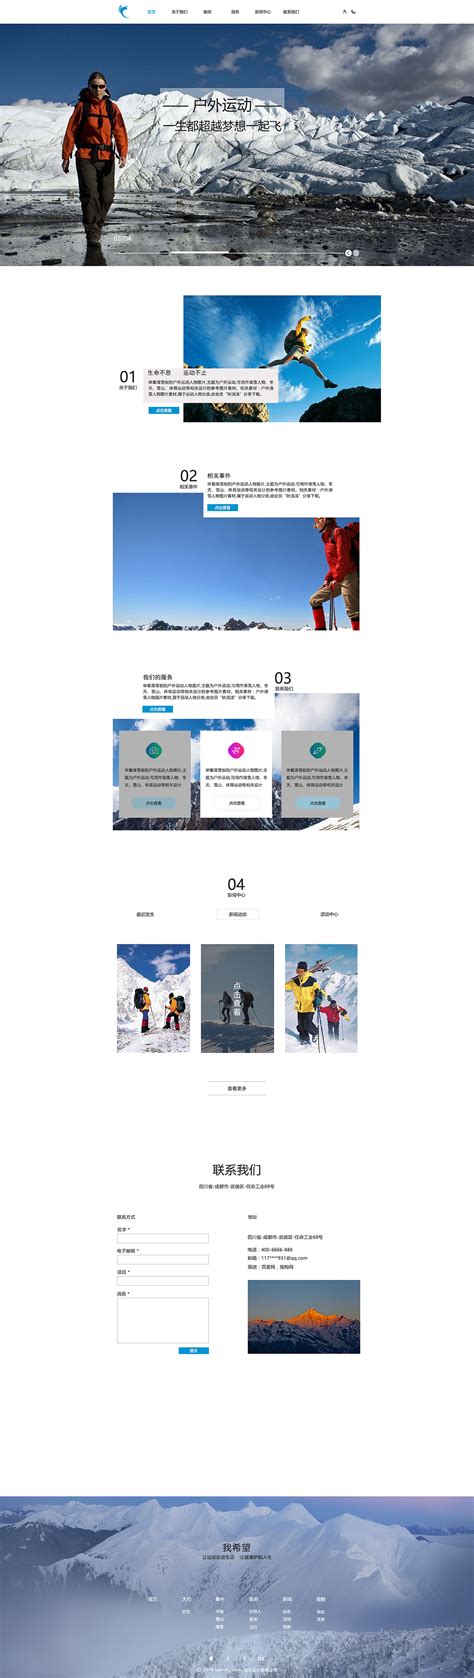 户外运动公司网站设计模板图片_户外运动公司网站设计模板设计素材_红动中国